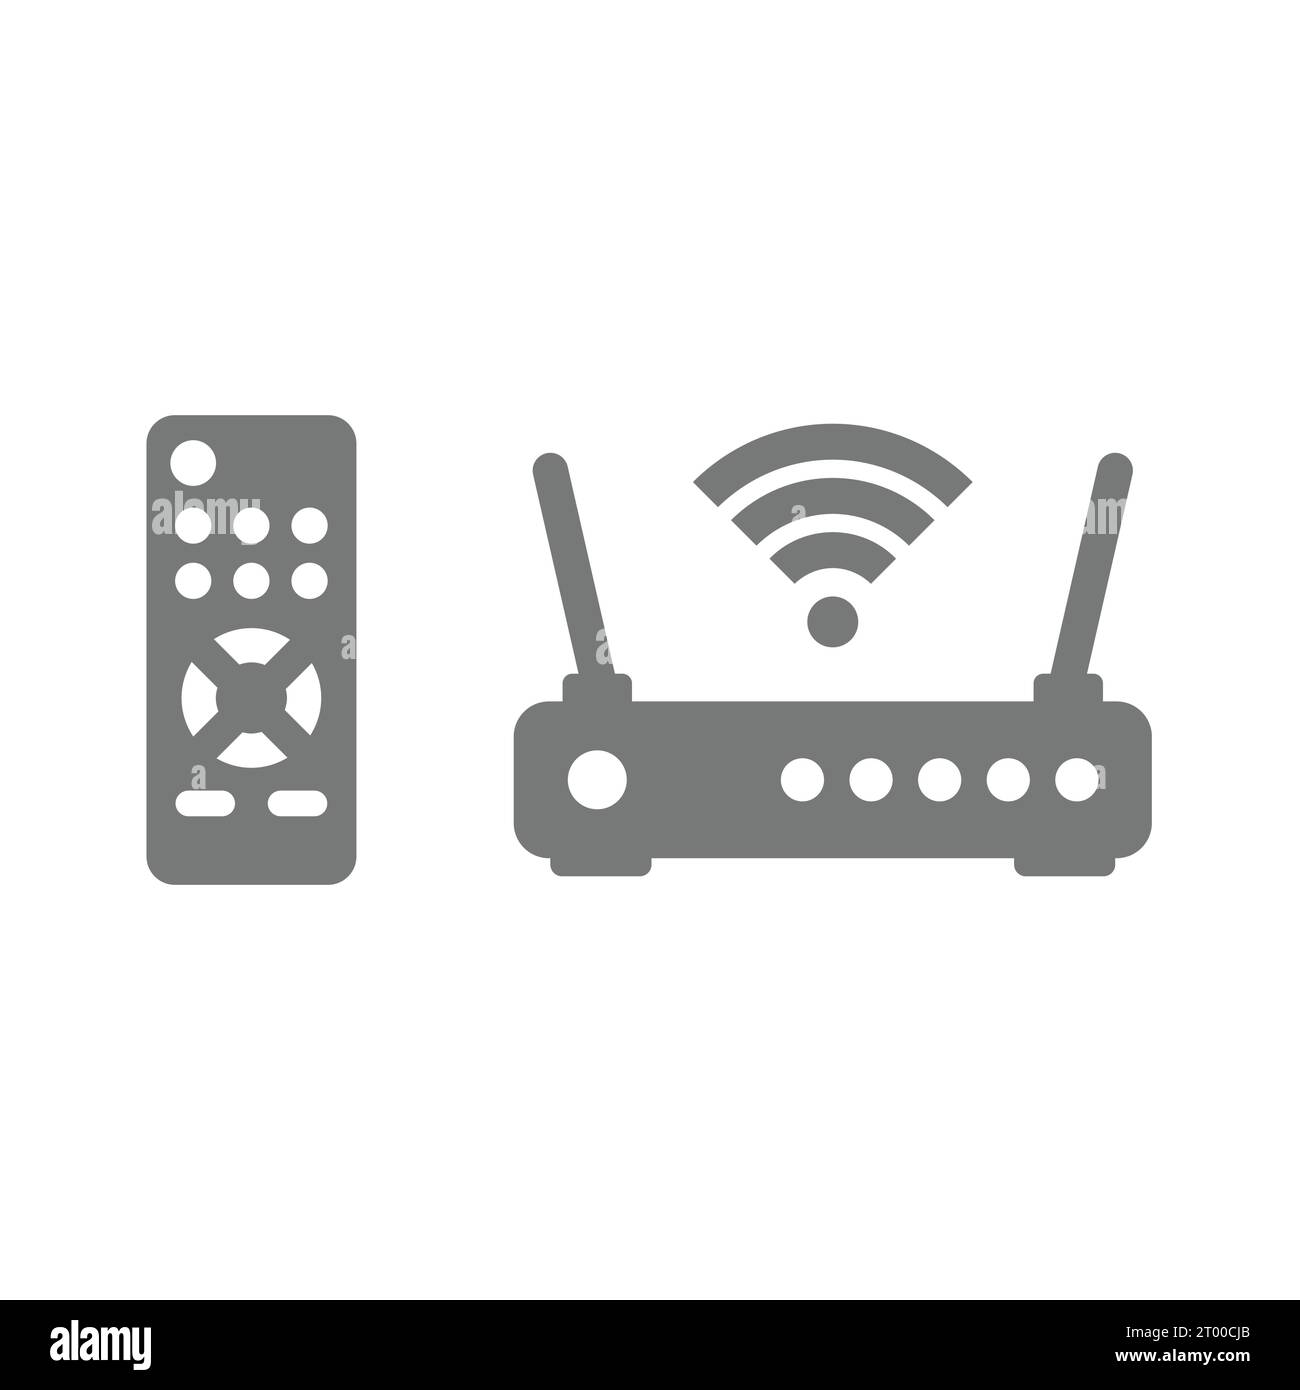 Iconos de servicios de TV e Internet. Mando a distancia y router, wi fi, conexión inalámbrica y conjunto de iconos de televisión. Ilustración del Vector